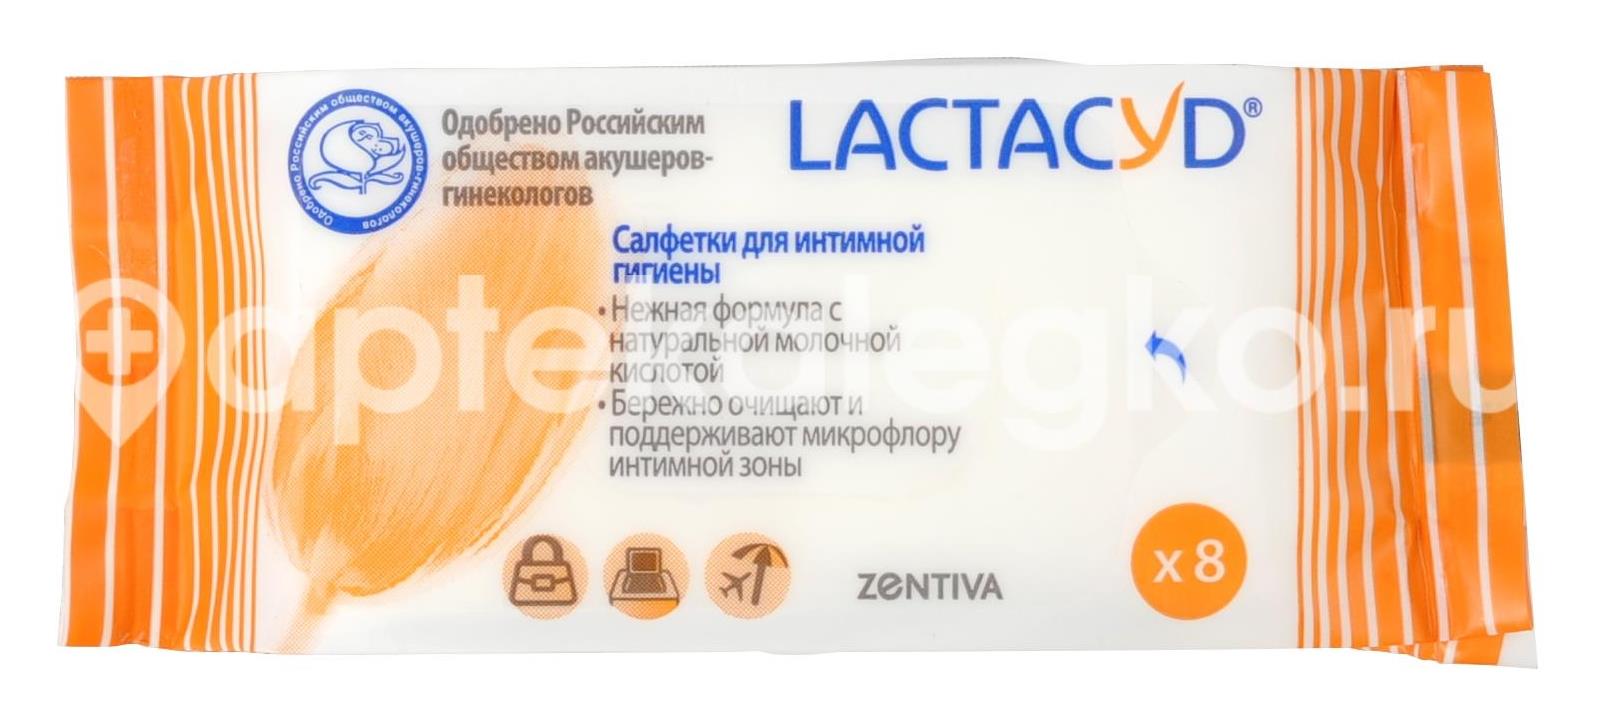 Лактацид салфетки для интим. гигиены №8 (фемина) [lactacyd] - 1